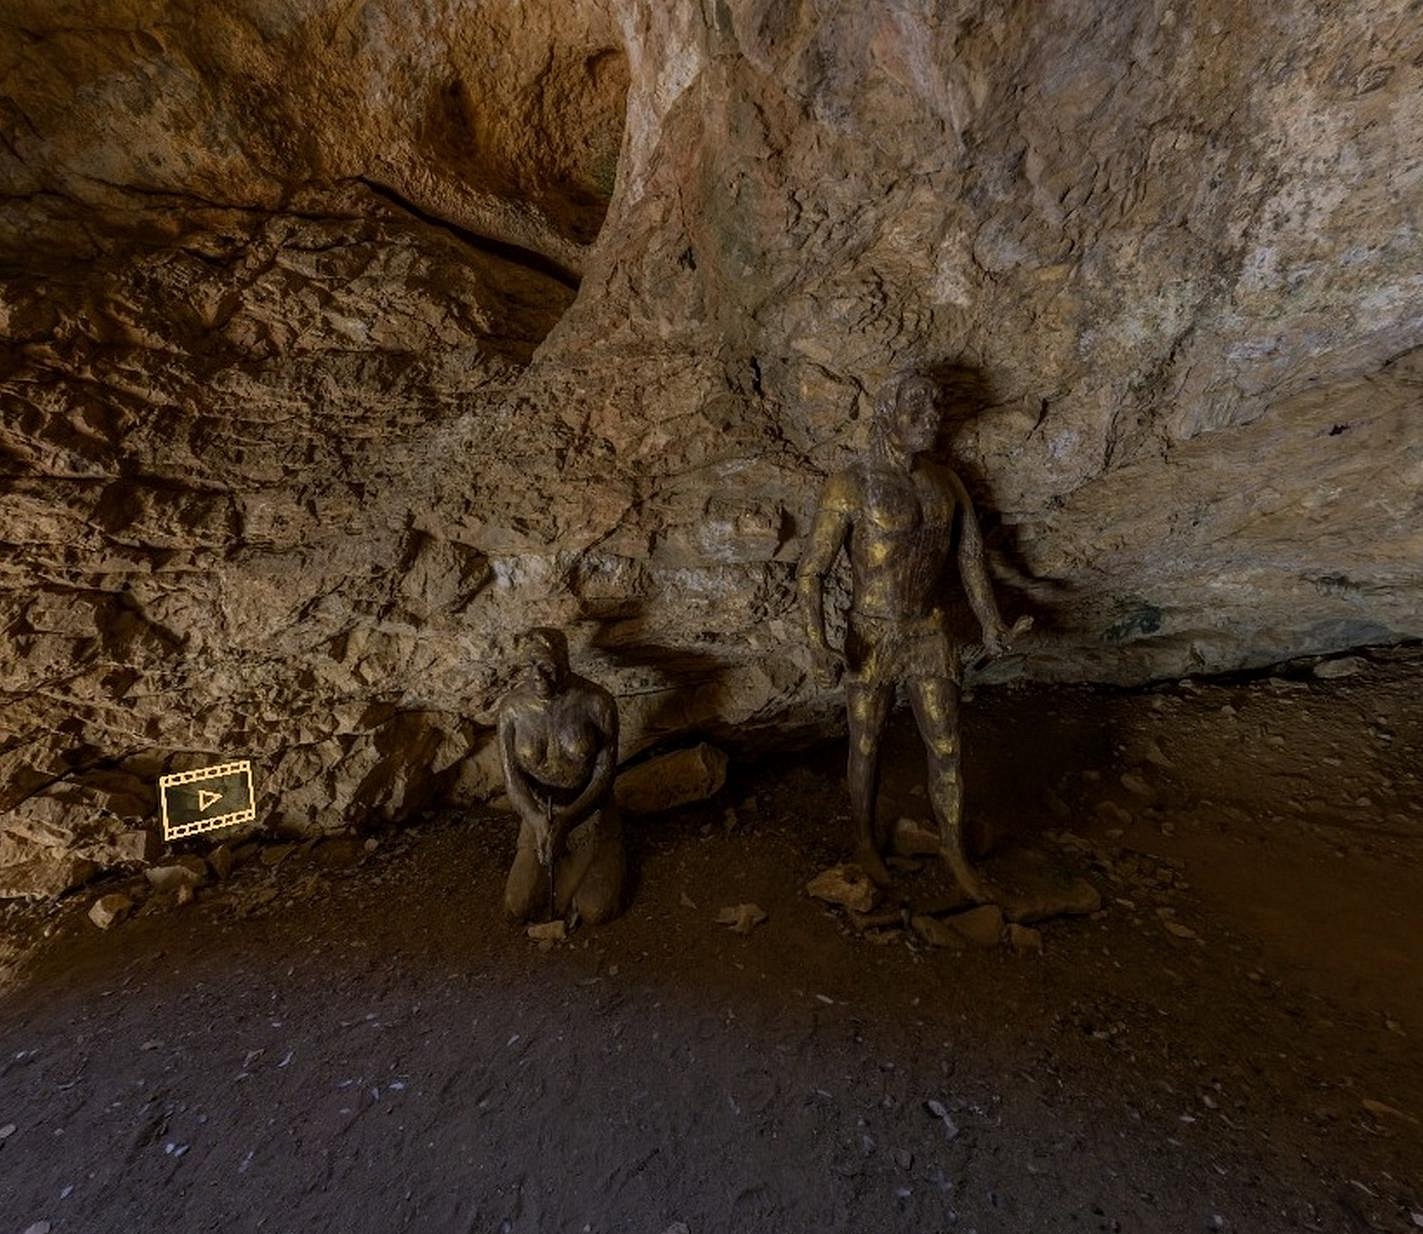 Новосибирцы создали виртуальный тур по монгольской пещере Цагаан-Агуй